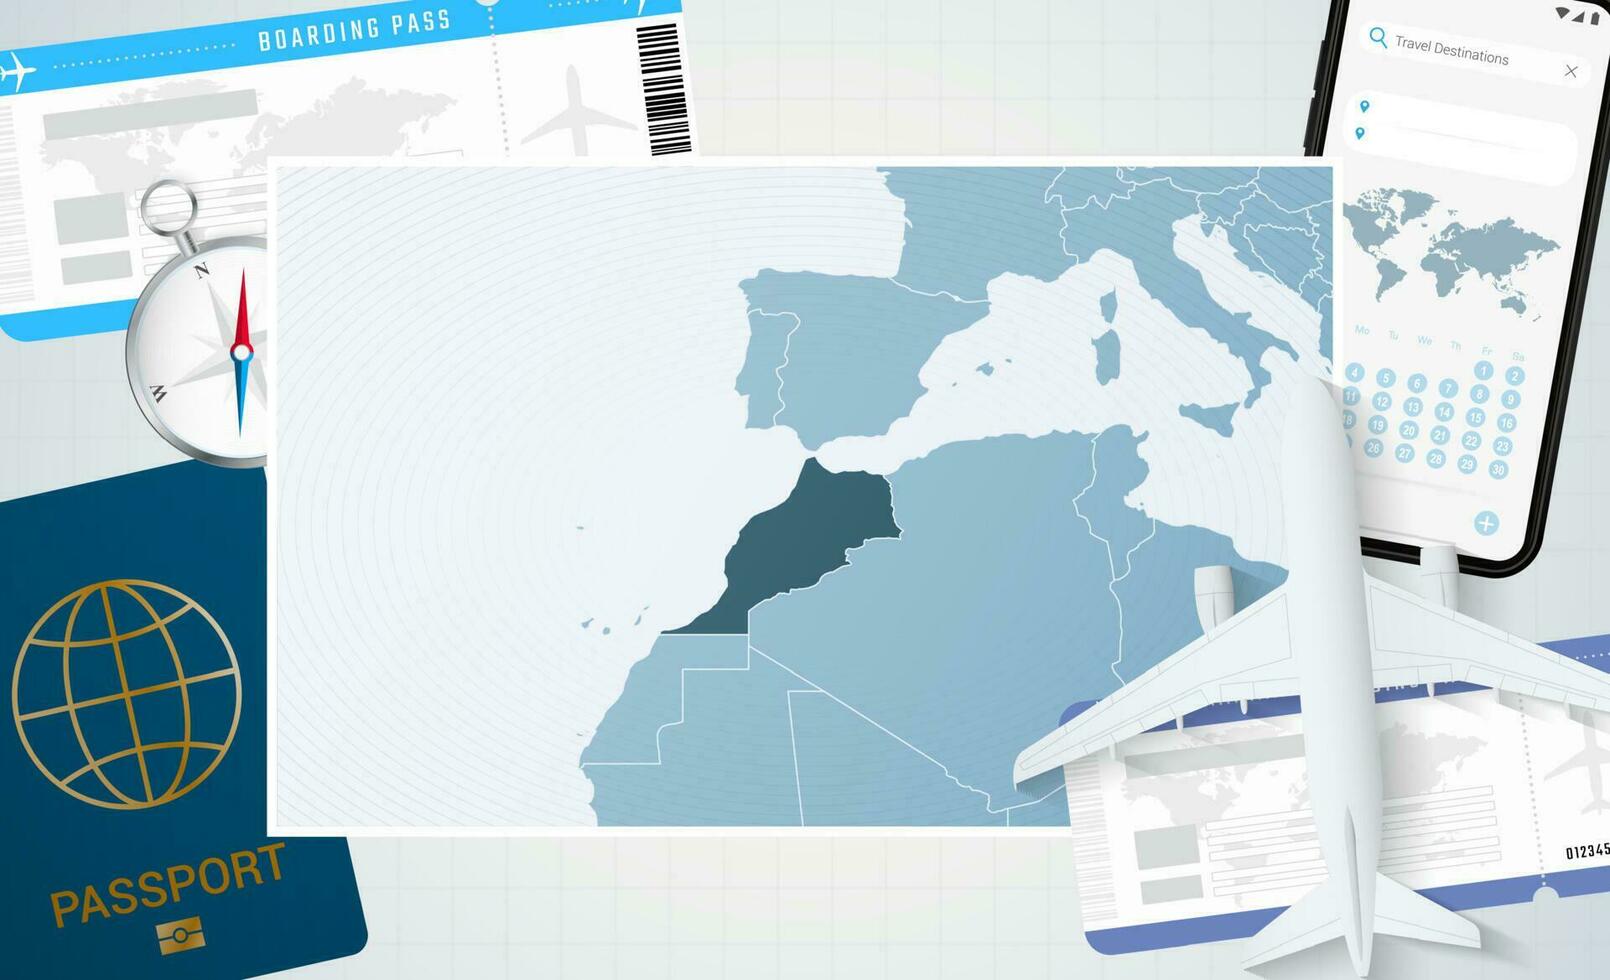 reis naar Marokko, illustratie met een kaart van Marokko. achtergrond met vliegtuig, cel telefoon, paspoort, kompas en kaartjes. vector